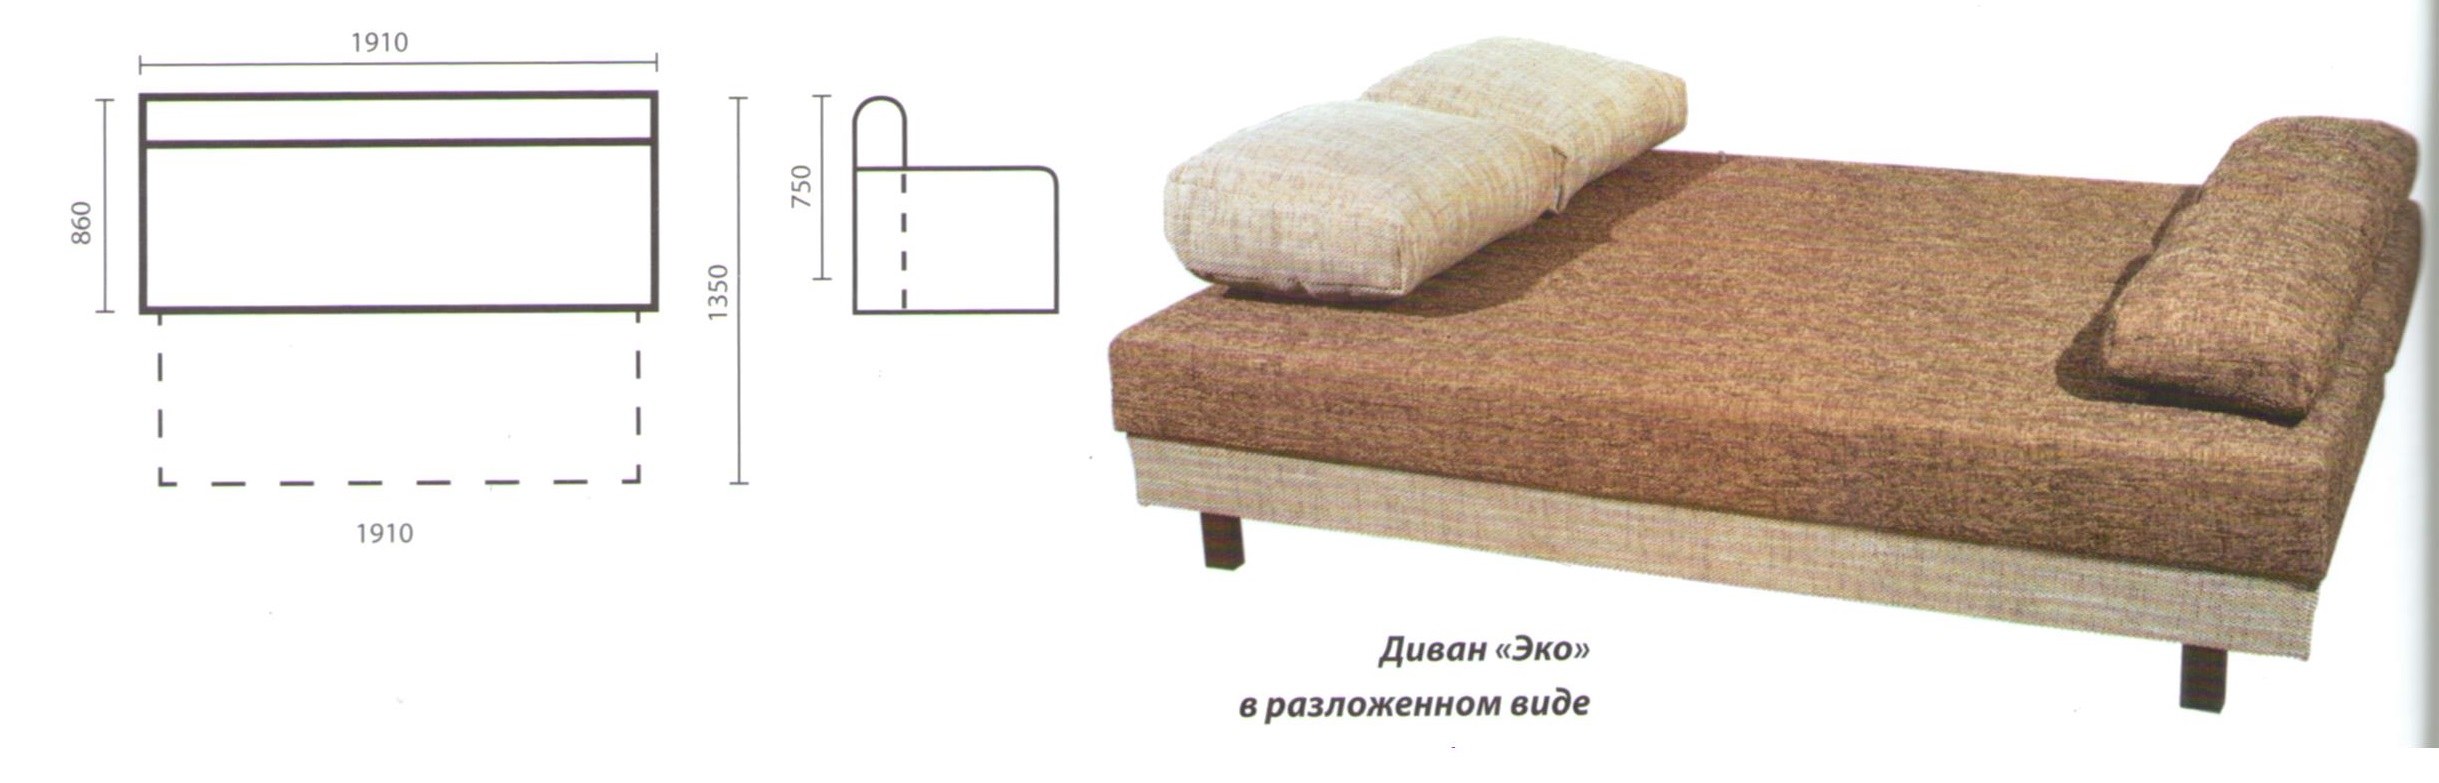 Размер старого дивана в разложенном виде